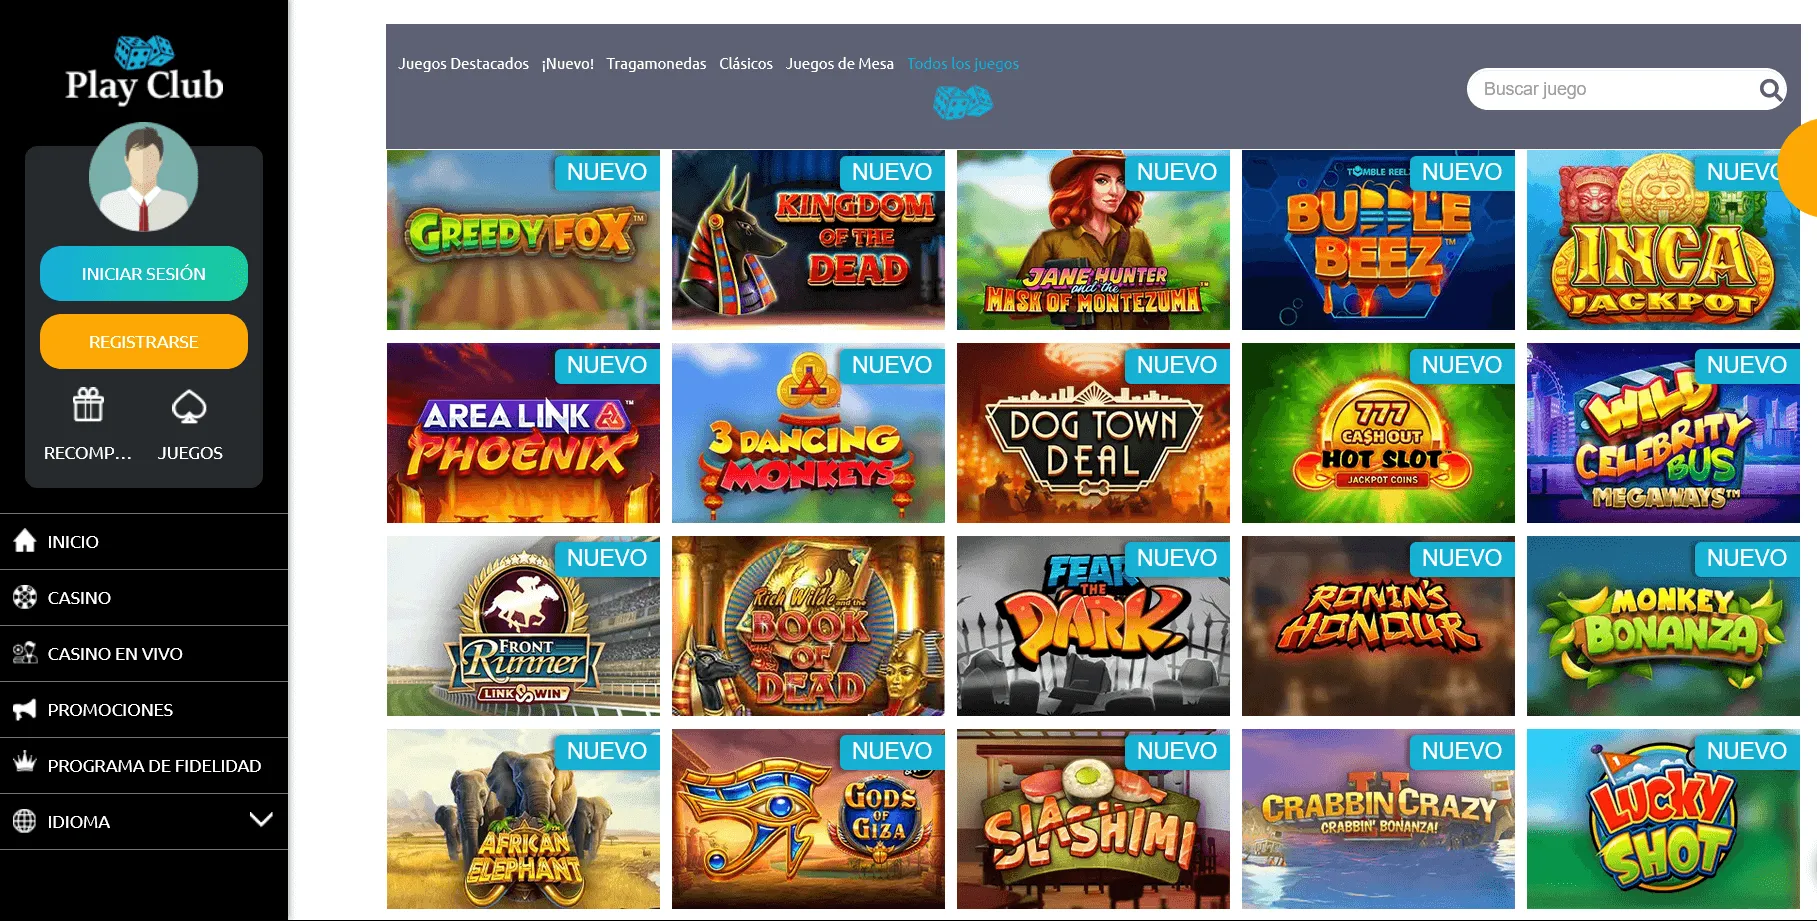 Condiciones de registro en PlayClub Casino y lista de juegos populares